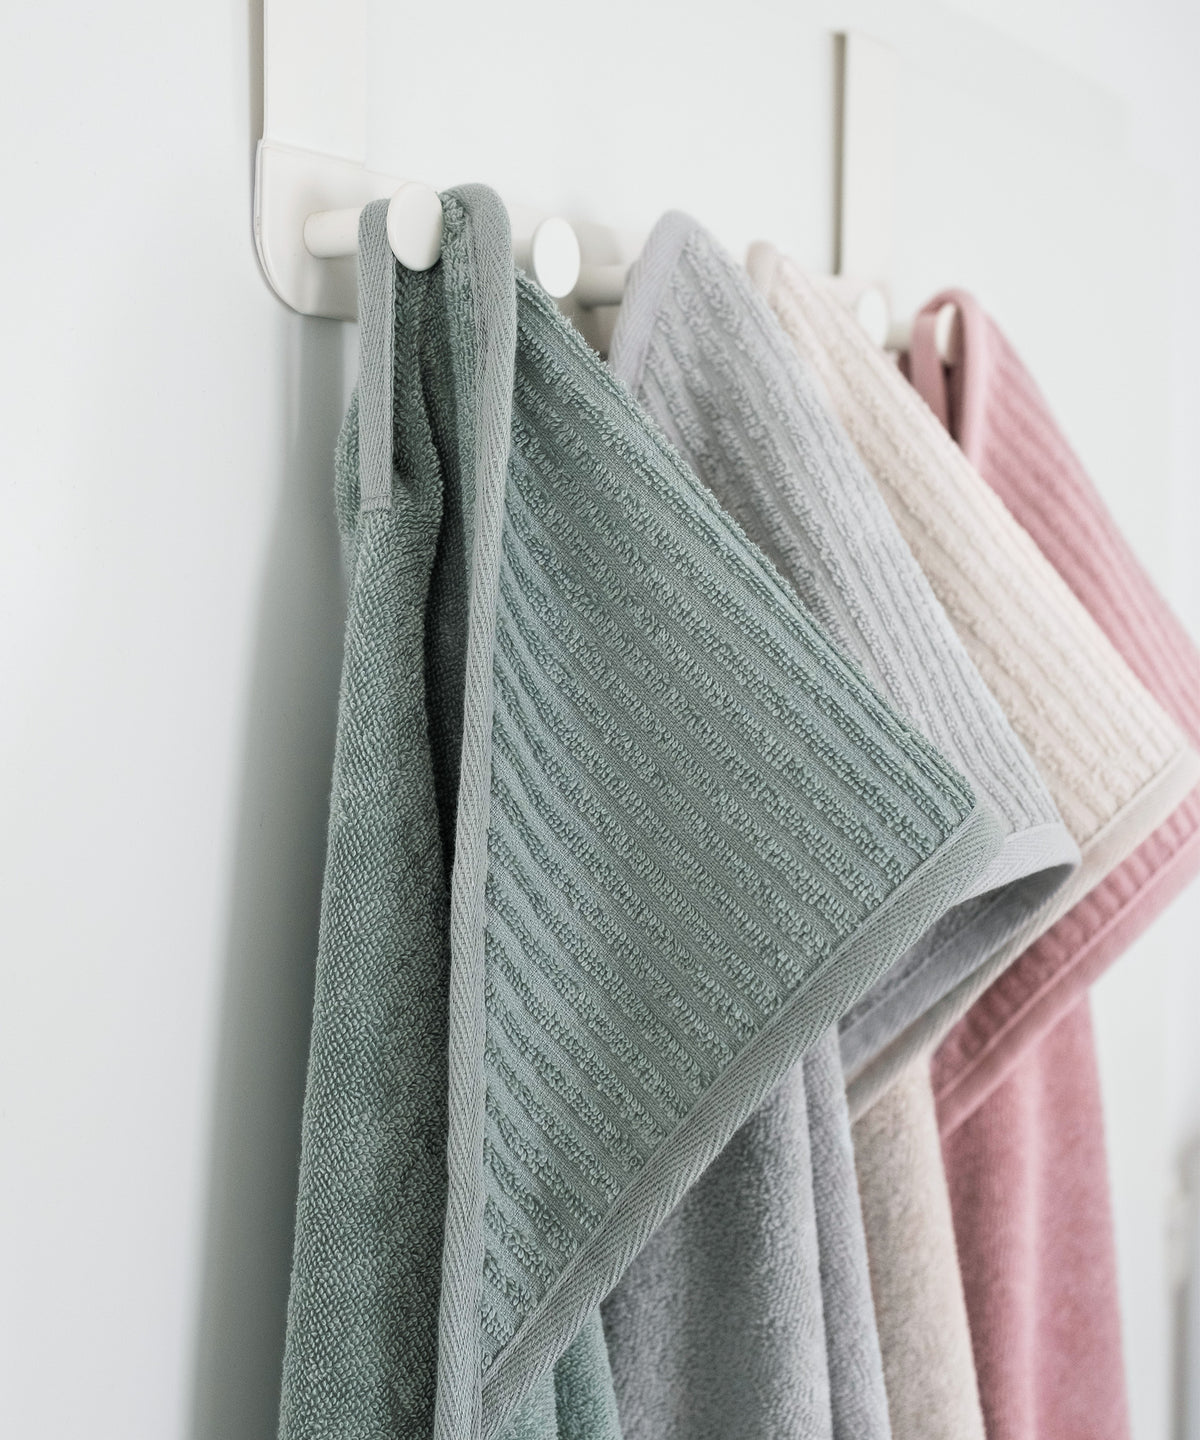 Kapuzenhandtücher in vier Farben hängen an Badezimmer-Garderobe.